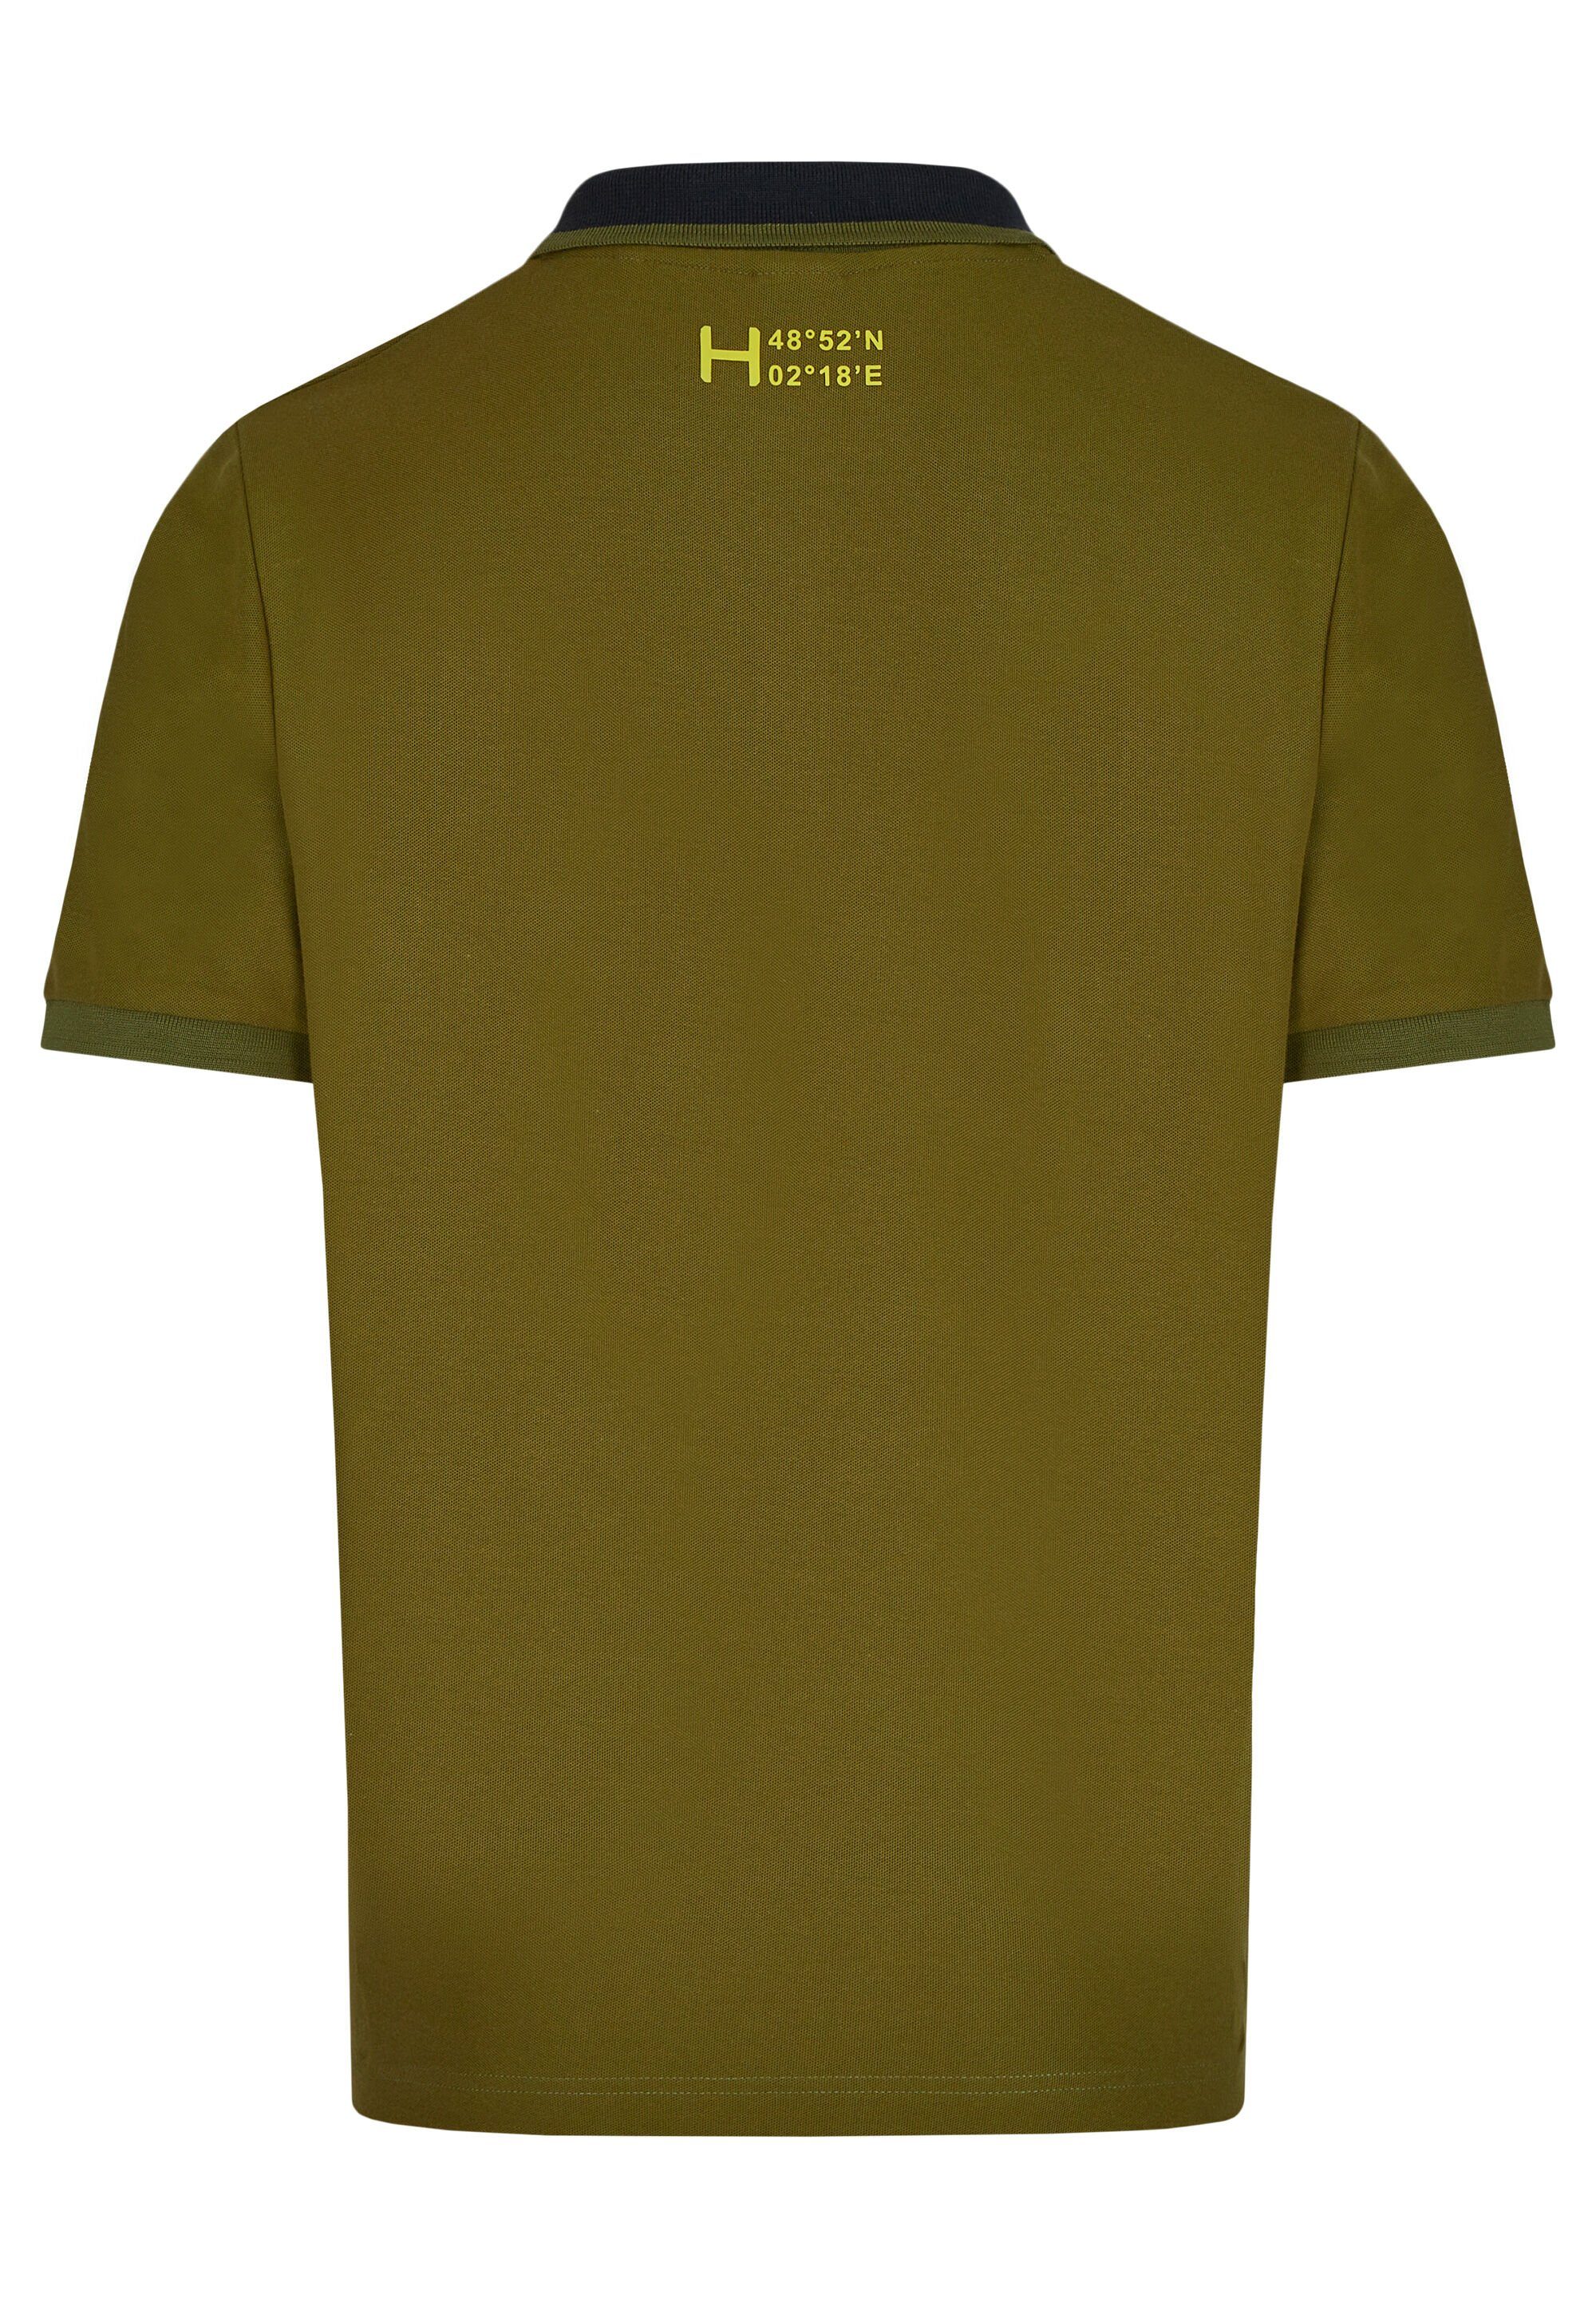 HECHTER Poloshirt green PARIS DH-XTECH